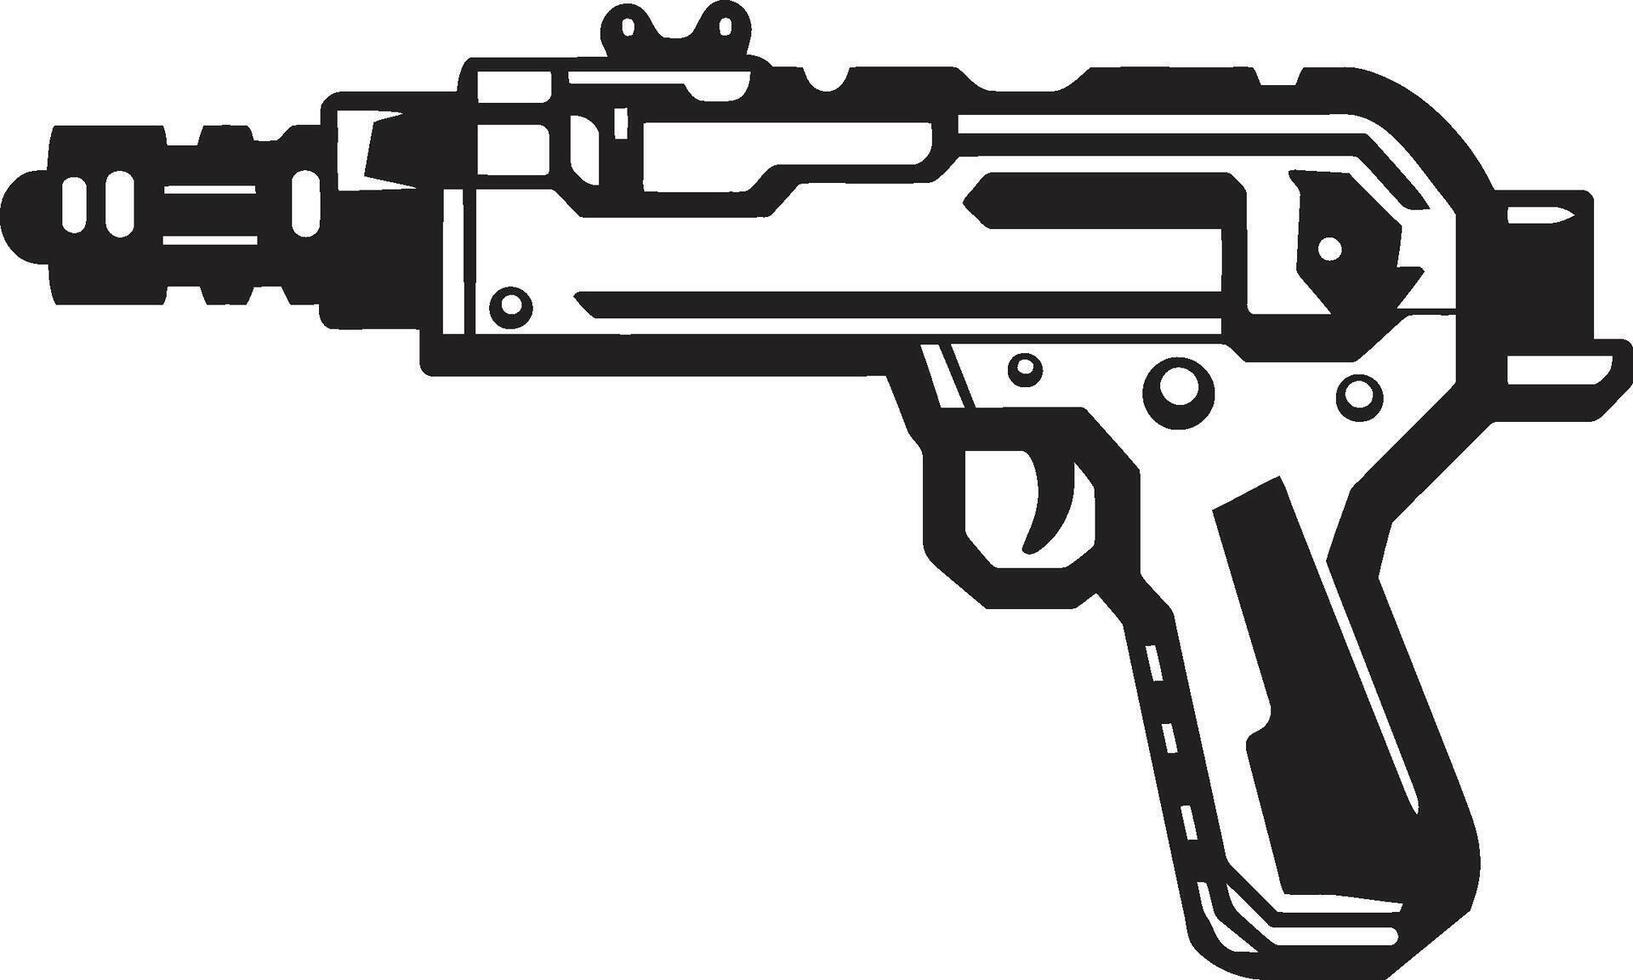 skum drivs fantasi dynamisk svart ikon med leksak pistol logotyp design nerf nomad elegant vektor symbol av en leksak pistol i svart